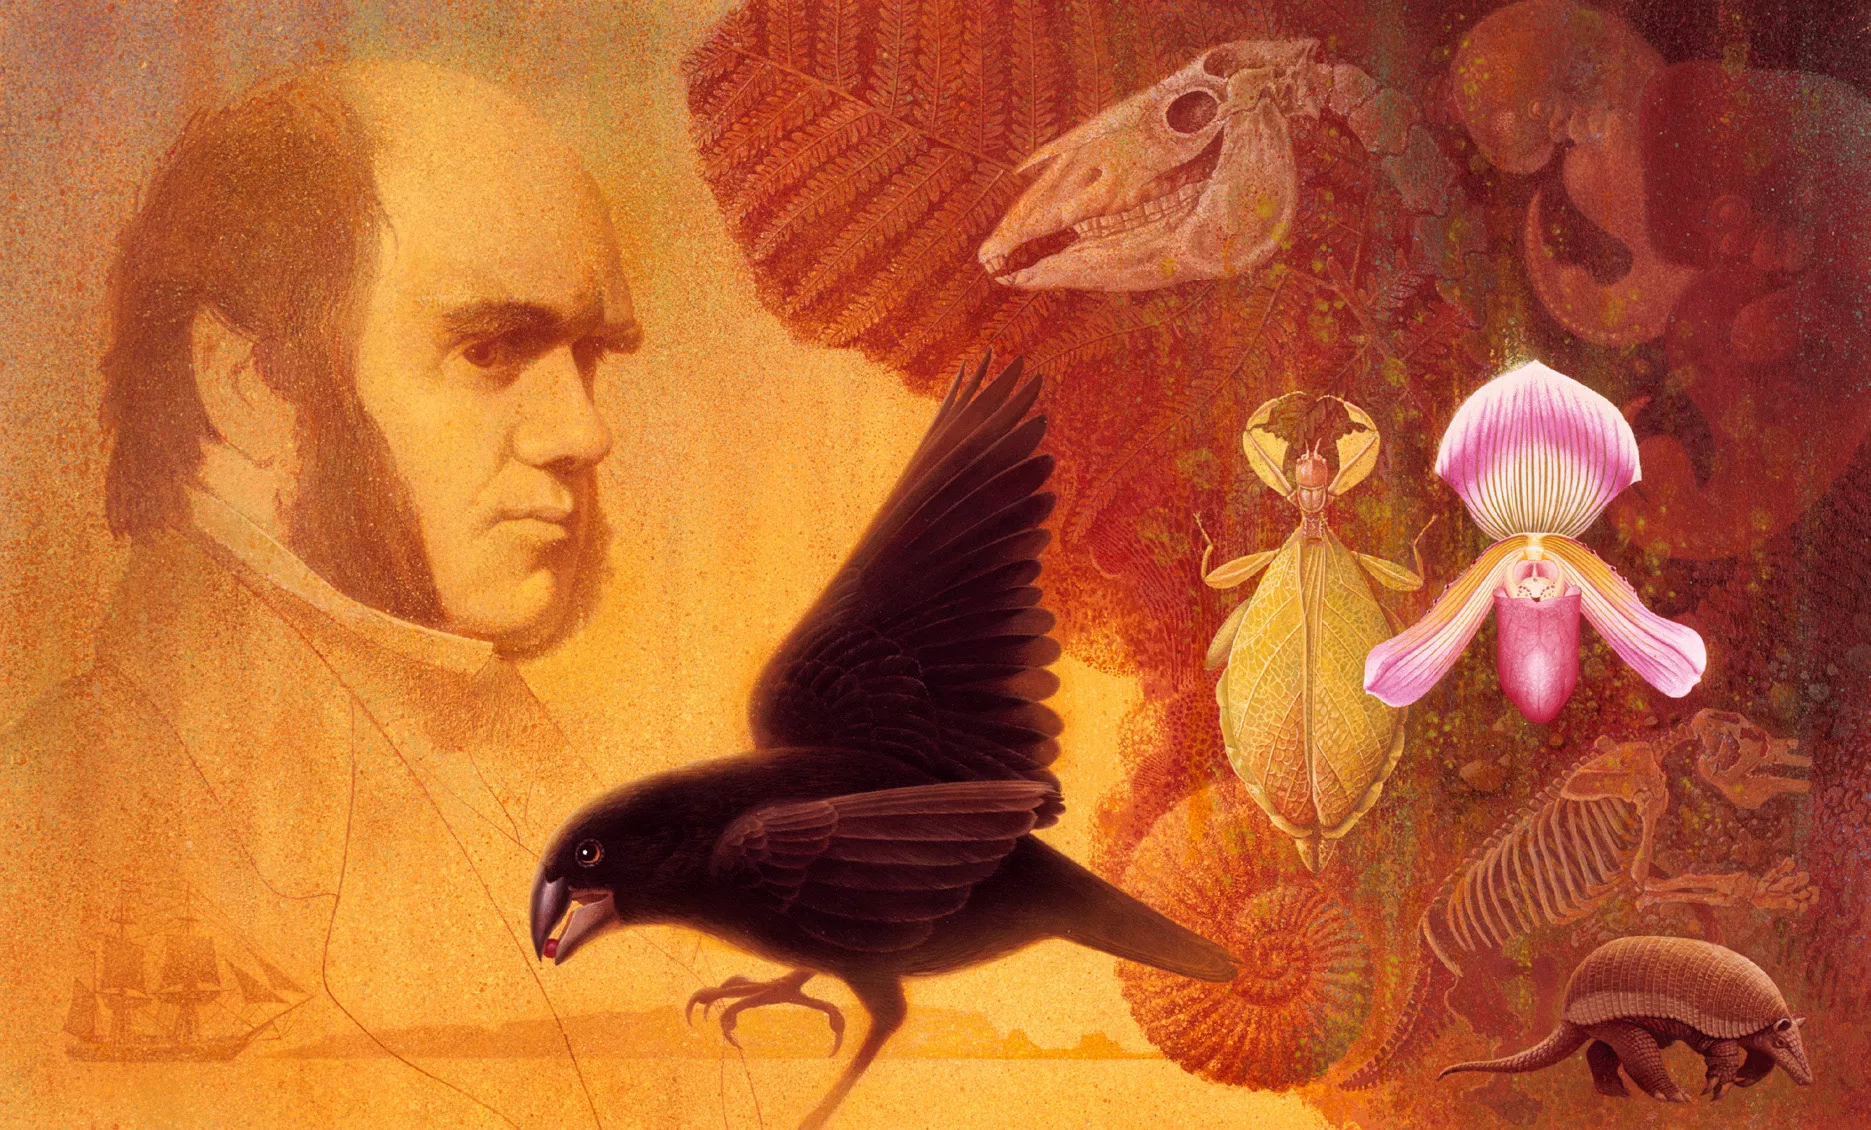 Els armadillos, les aus de les illes Galàpagos i diversos espècimens fòssils són algunes de les espècies que més van sorprendre al jove Charles Darwin, totes elles recreades en aquesta il·lustració